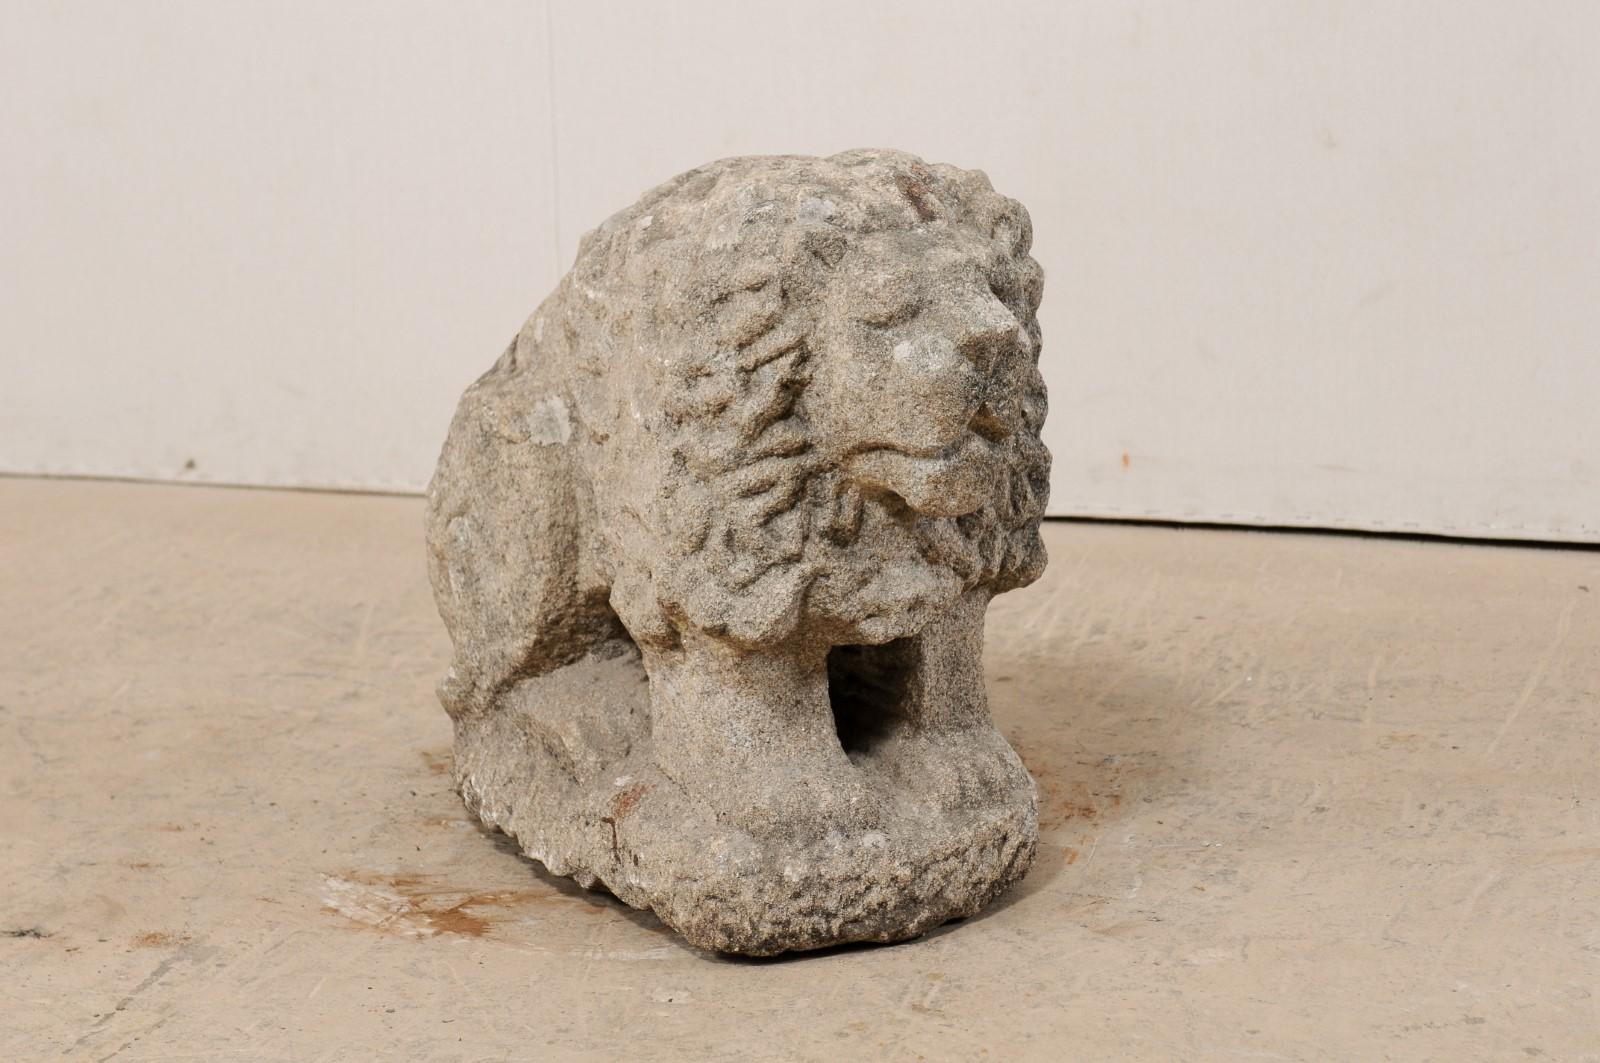 Un lion européen en pierre sculptée datant du 19e siècle, voire plus ancien. Cette statuette de lion antique en pierre présente de jolis détails sculptés à la main, notamment la crinière joliment texturée et les traits du visage. Le lion est en